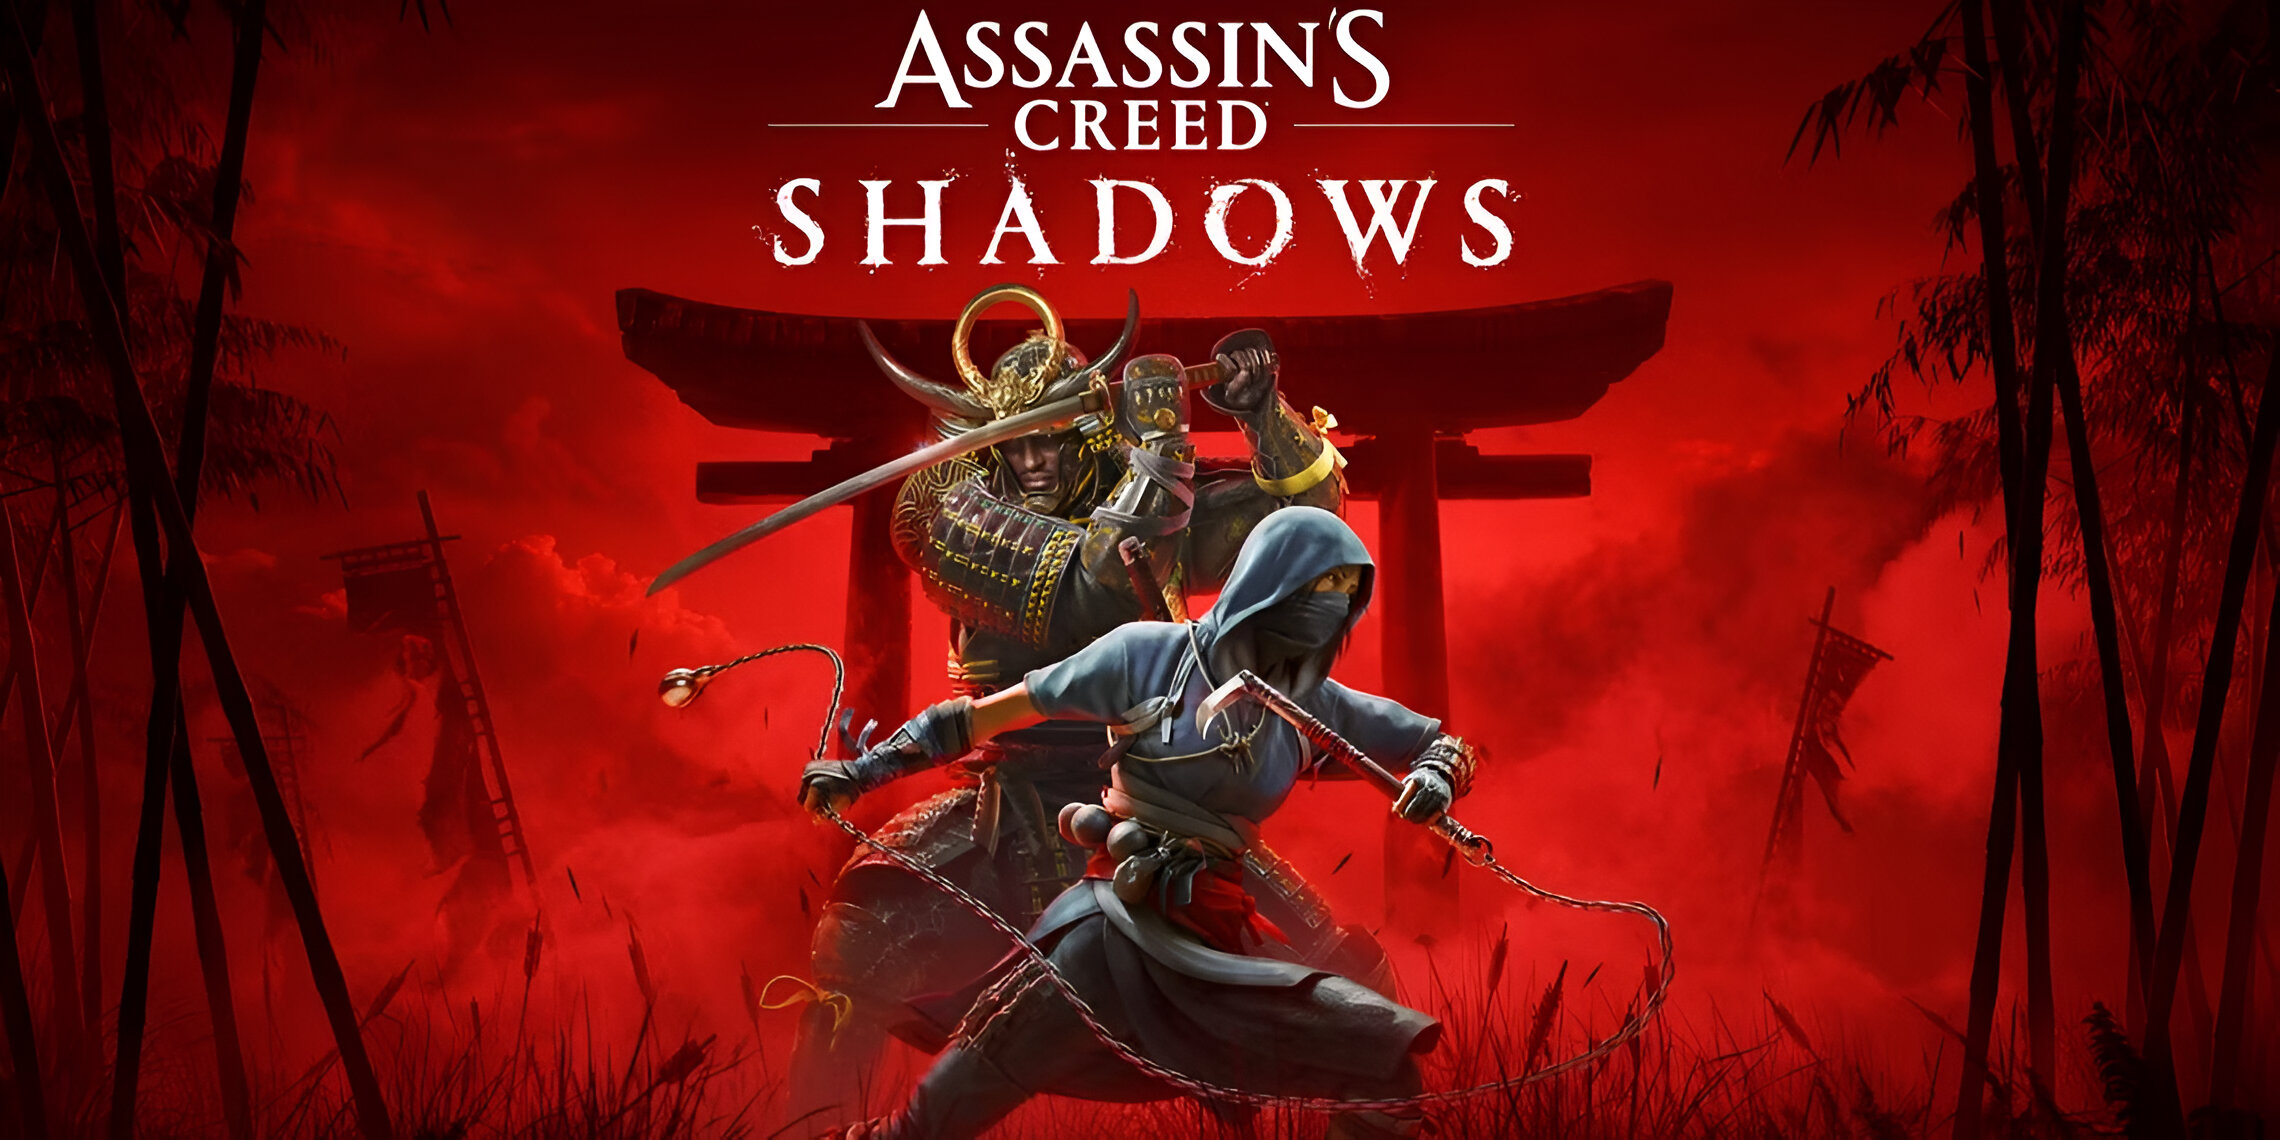 Assassin's Creed Shadows Collector’s Edition đã hết hàng ở nhiều nơi